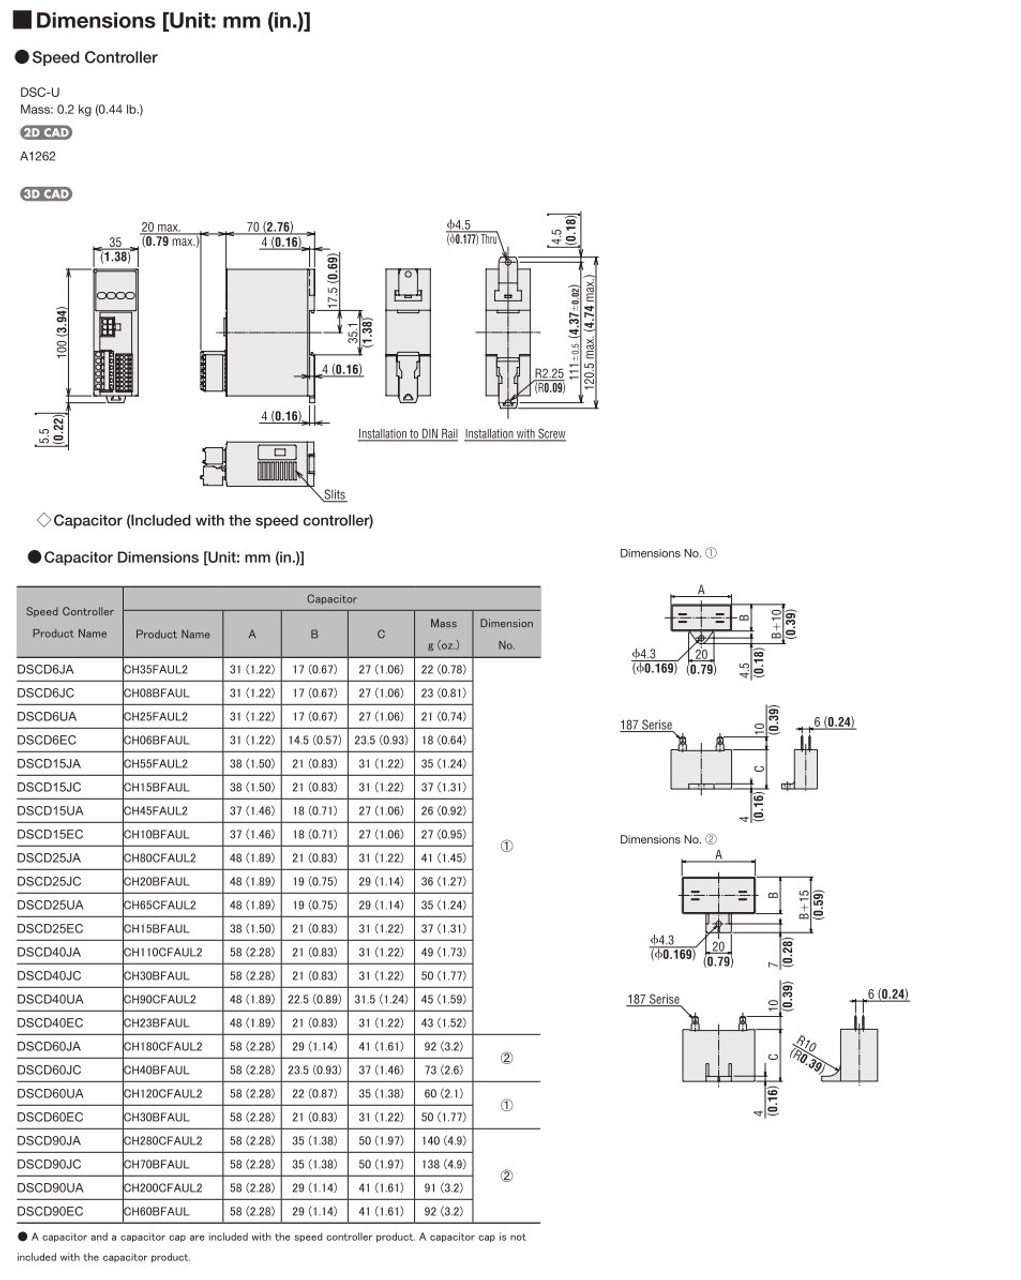 SCM315EC-36 / DSCD15EC - Dimensions